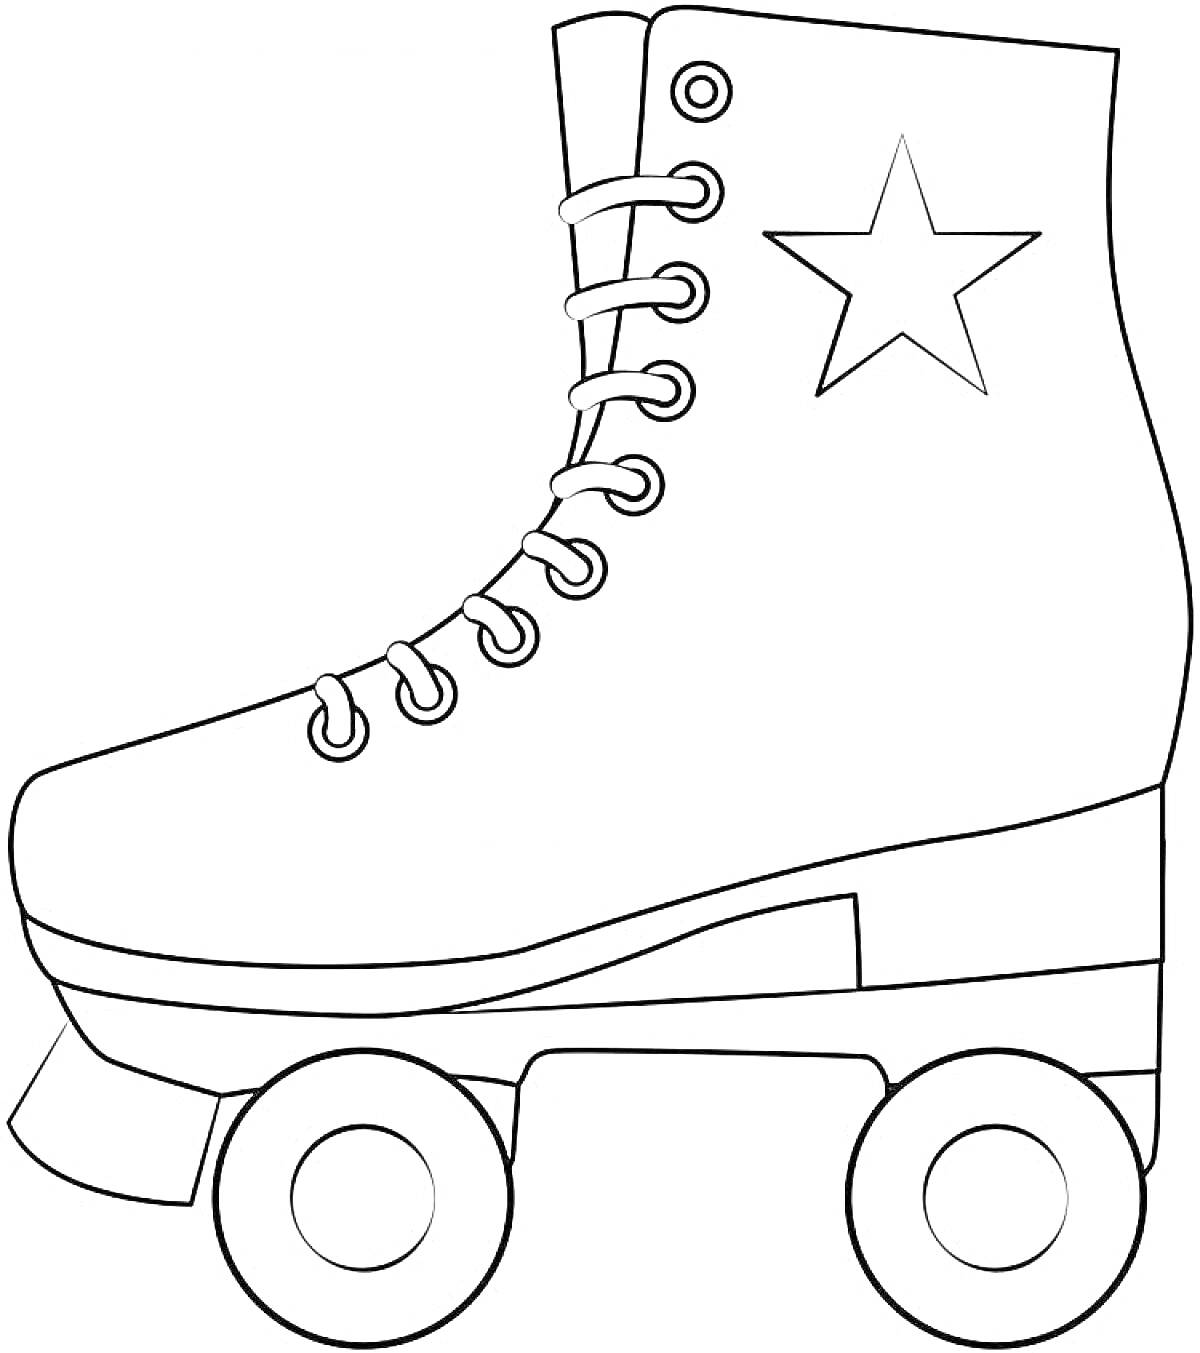 Раскраска Роликовый конек с шнуровкой и звездой, четыре колеса